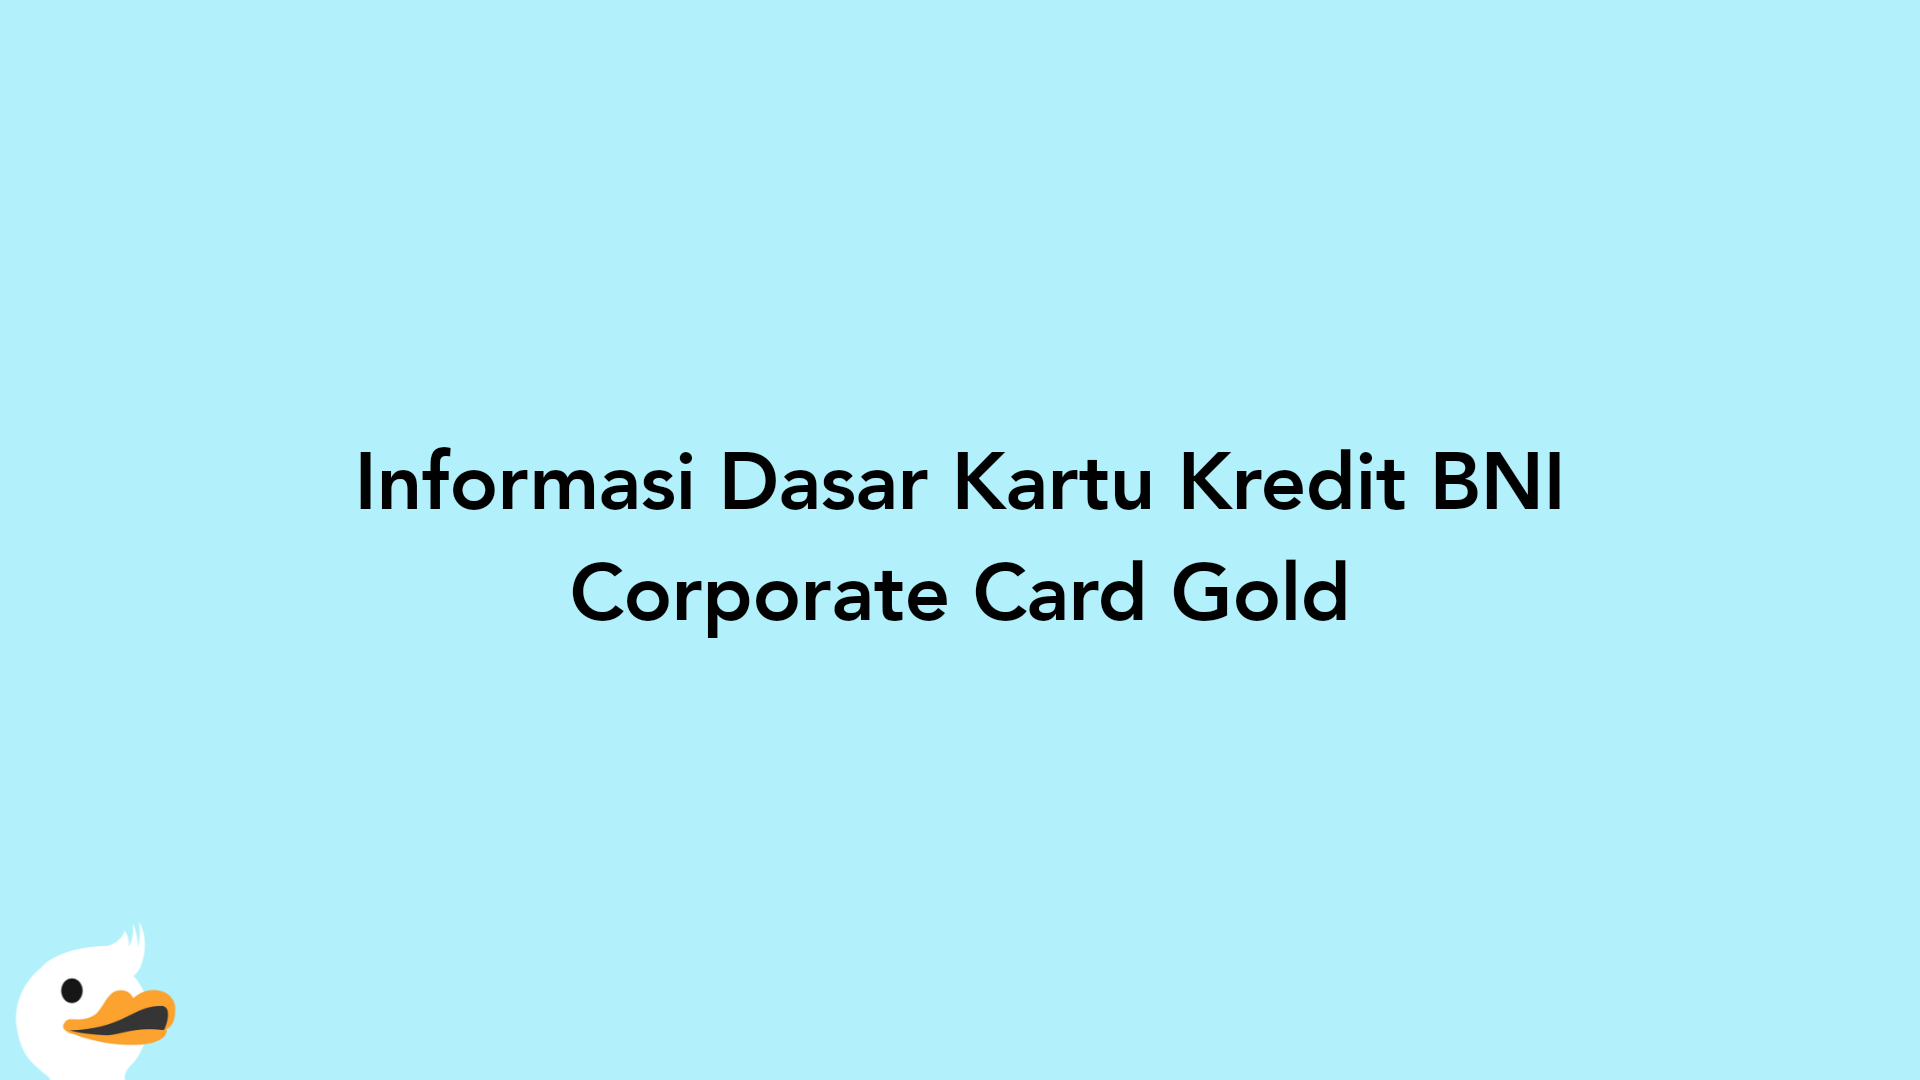 Informasi Dasar Kartu Kredit BNI Corporate Card Gold